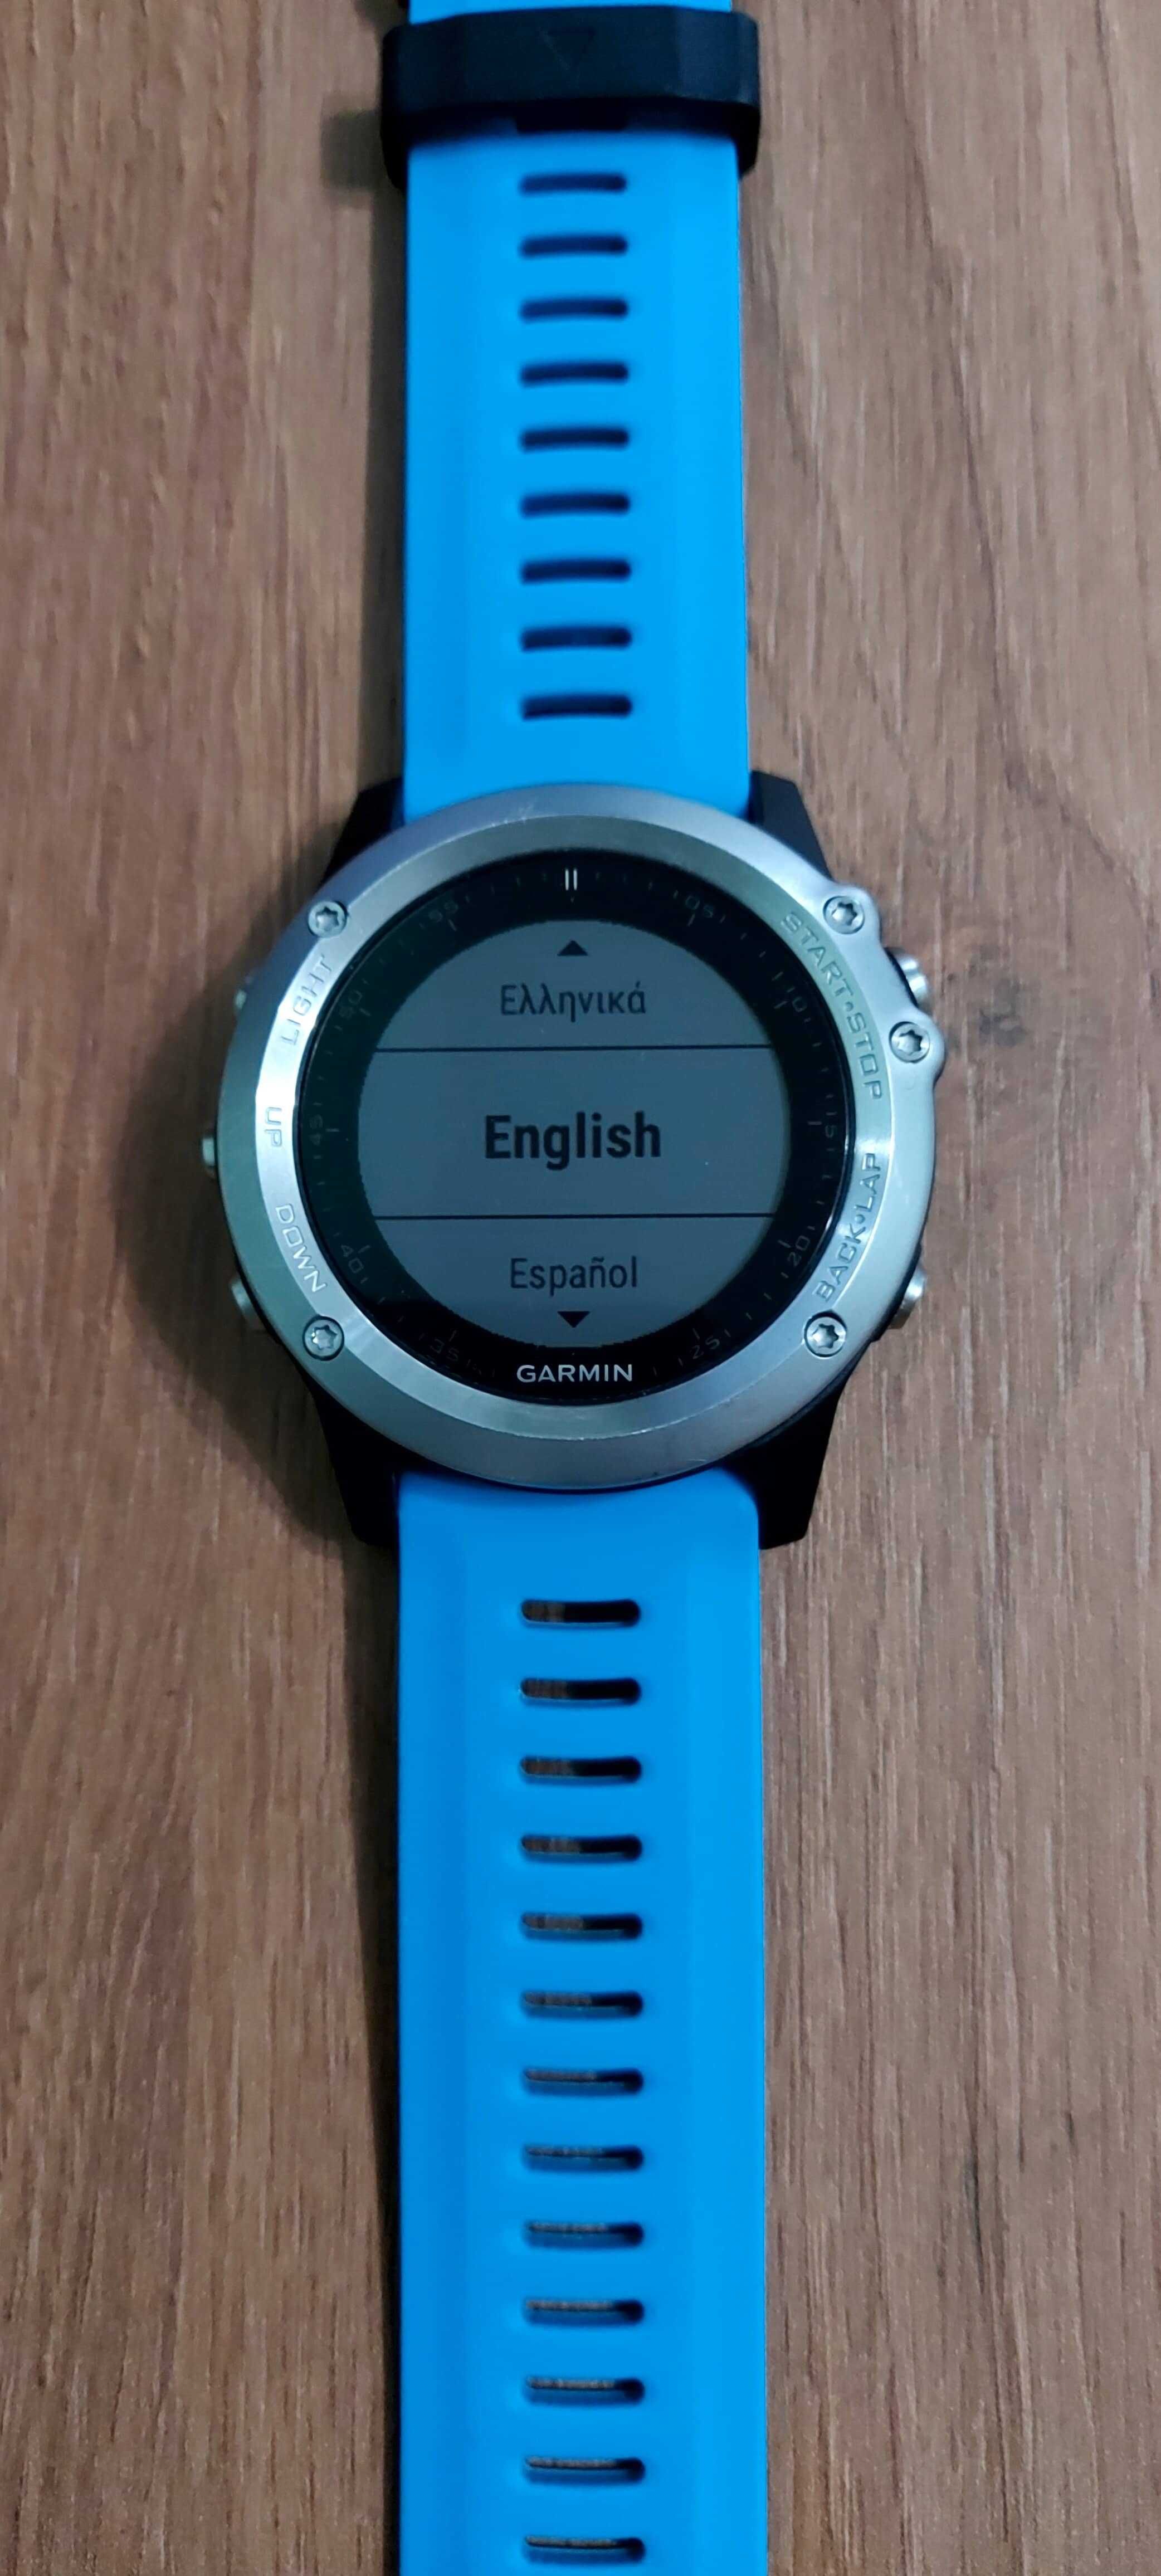 Vand Smartwatch Garmin Fenix 3HR Multisport